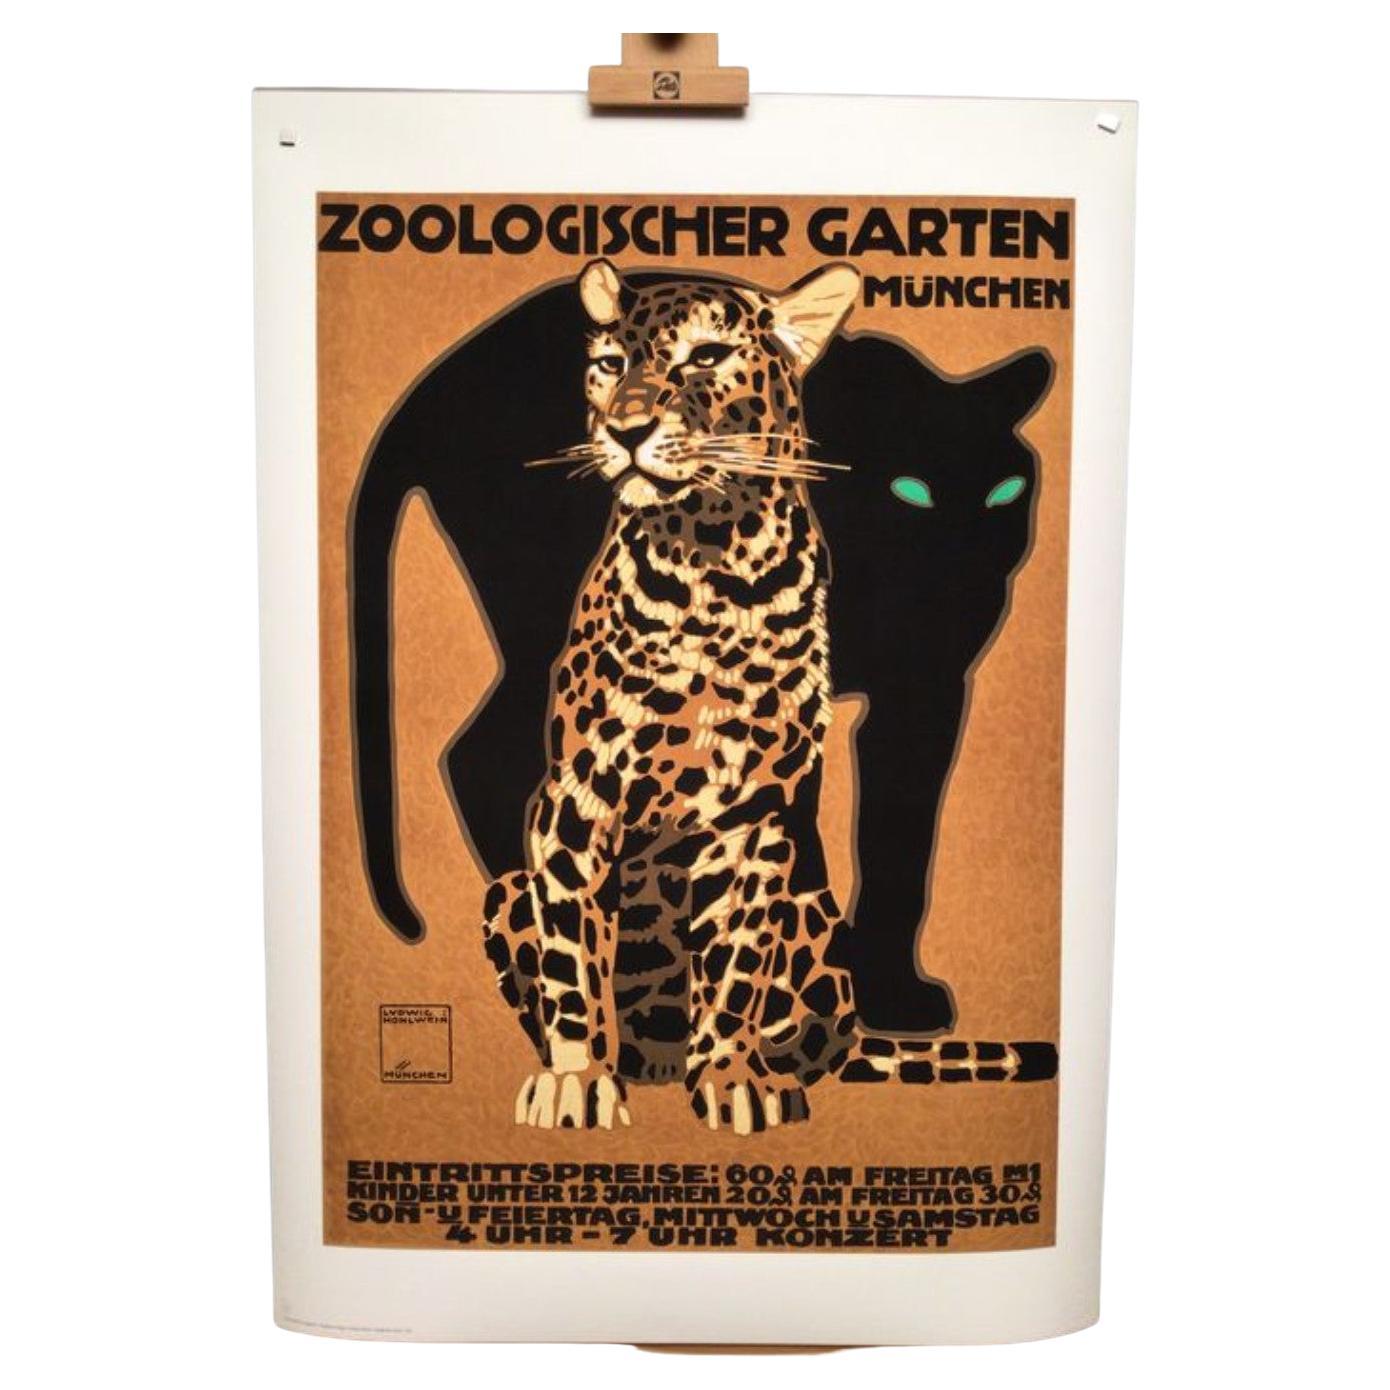 Ludwig Hohlwein Zoologischer Garten Munchen Vintage Poster Re-Edition For Sale